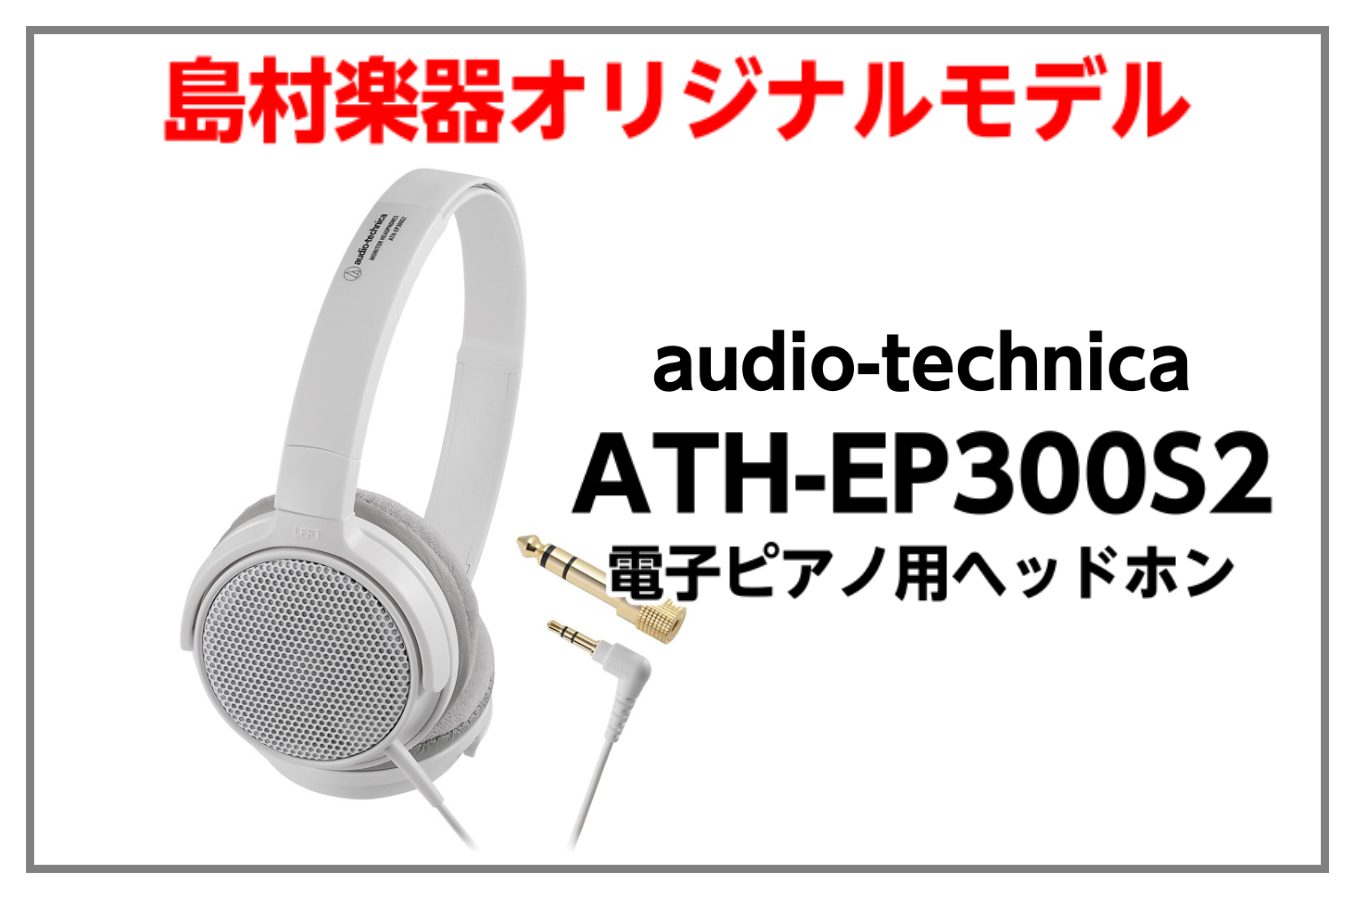 島村楽器オリジナルモデル】audio-technica ATH-EP300S2入荷 (電子 